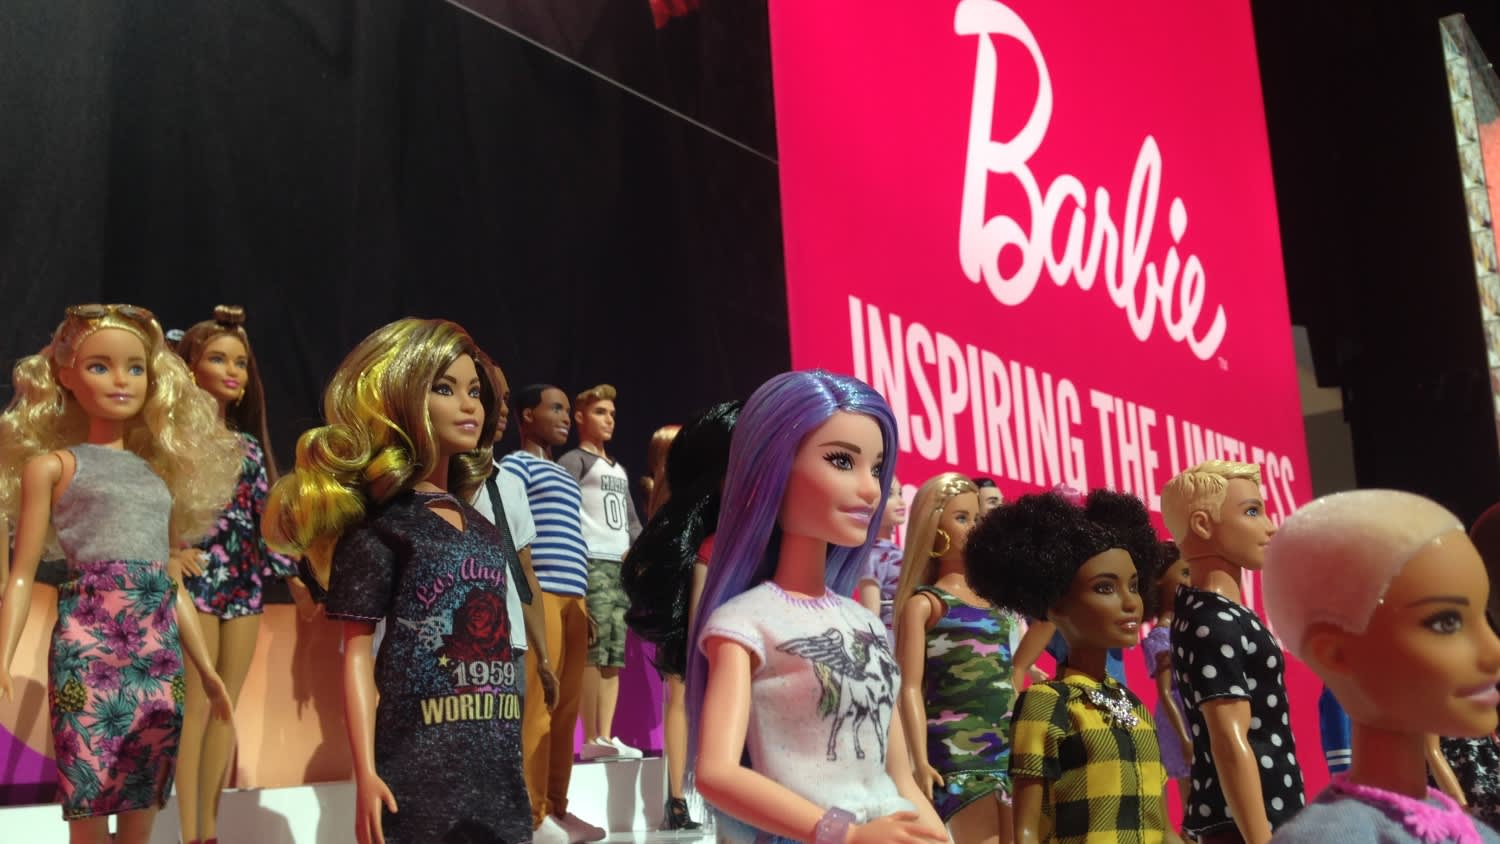 barbie sales history